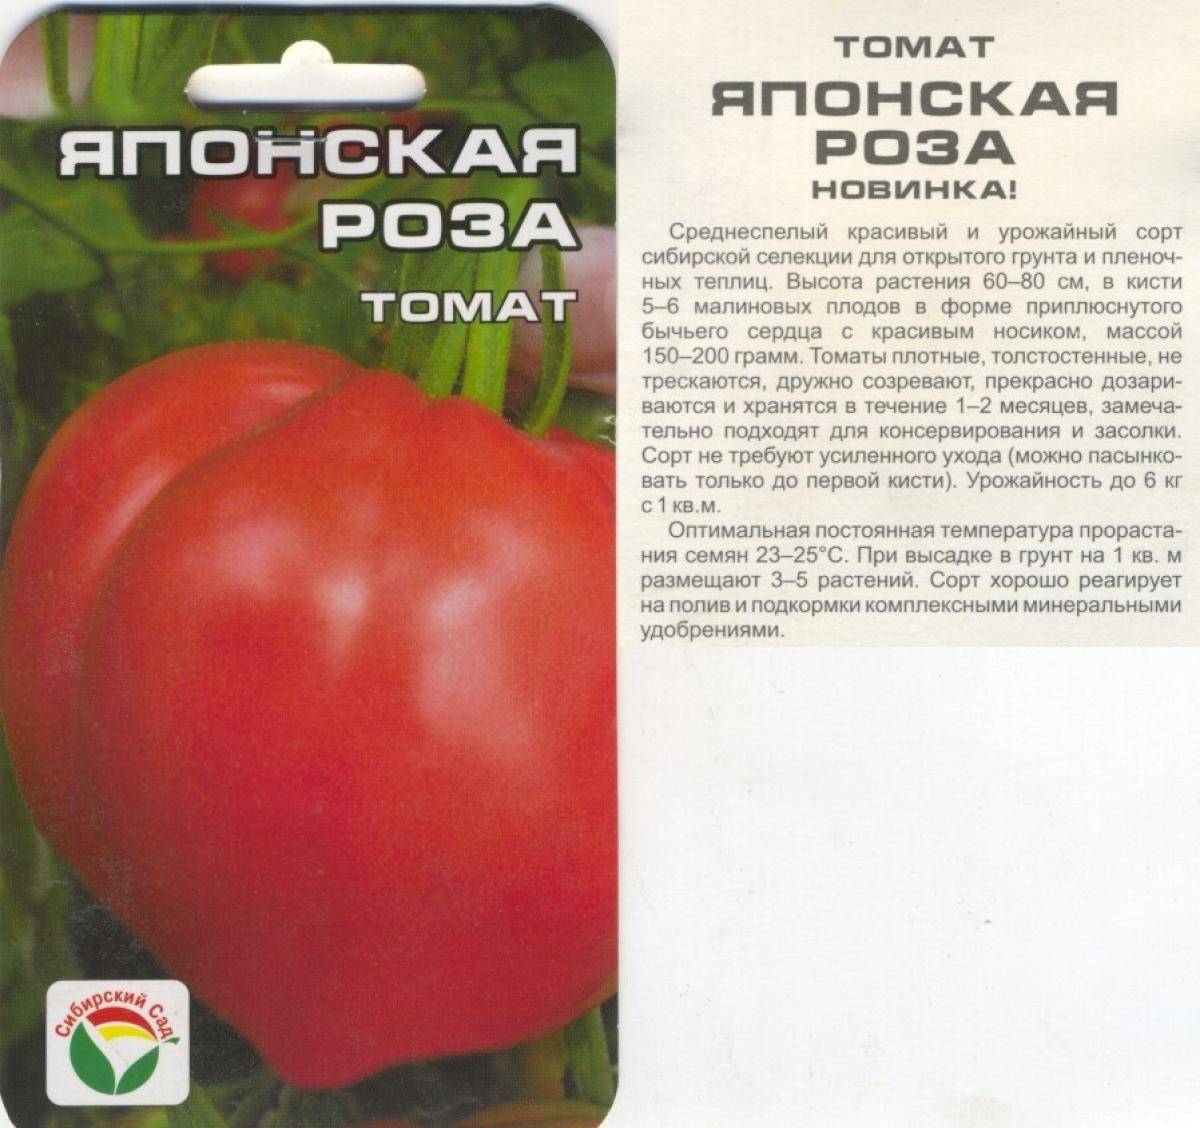 Томат "дикая роза": характеристика и описание сорта, рекомендации по выращиванию помидоров русский фермер